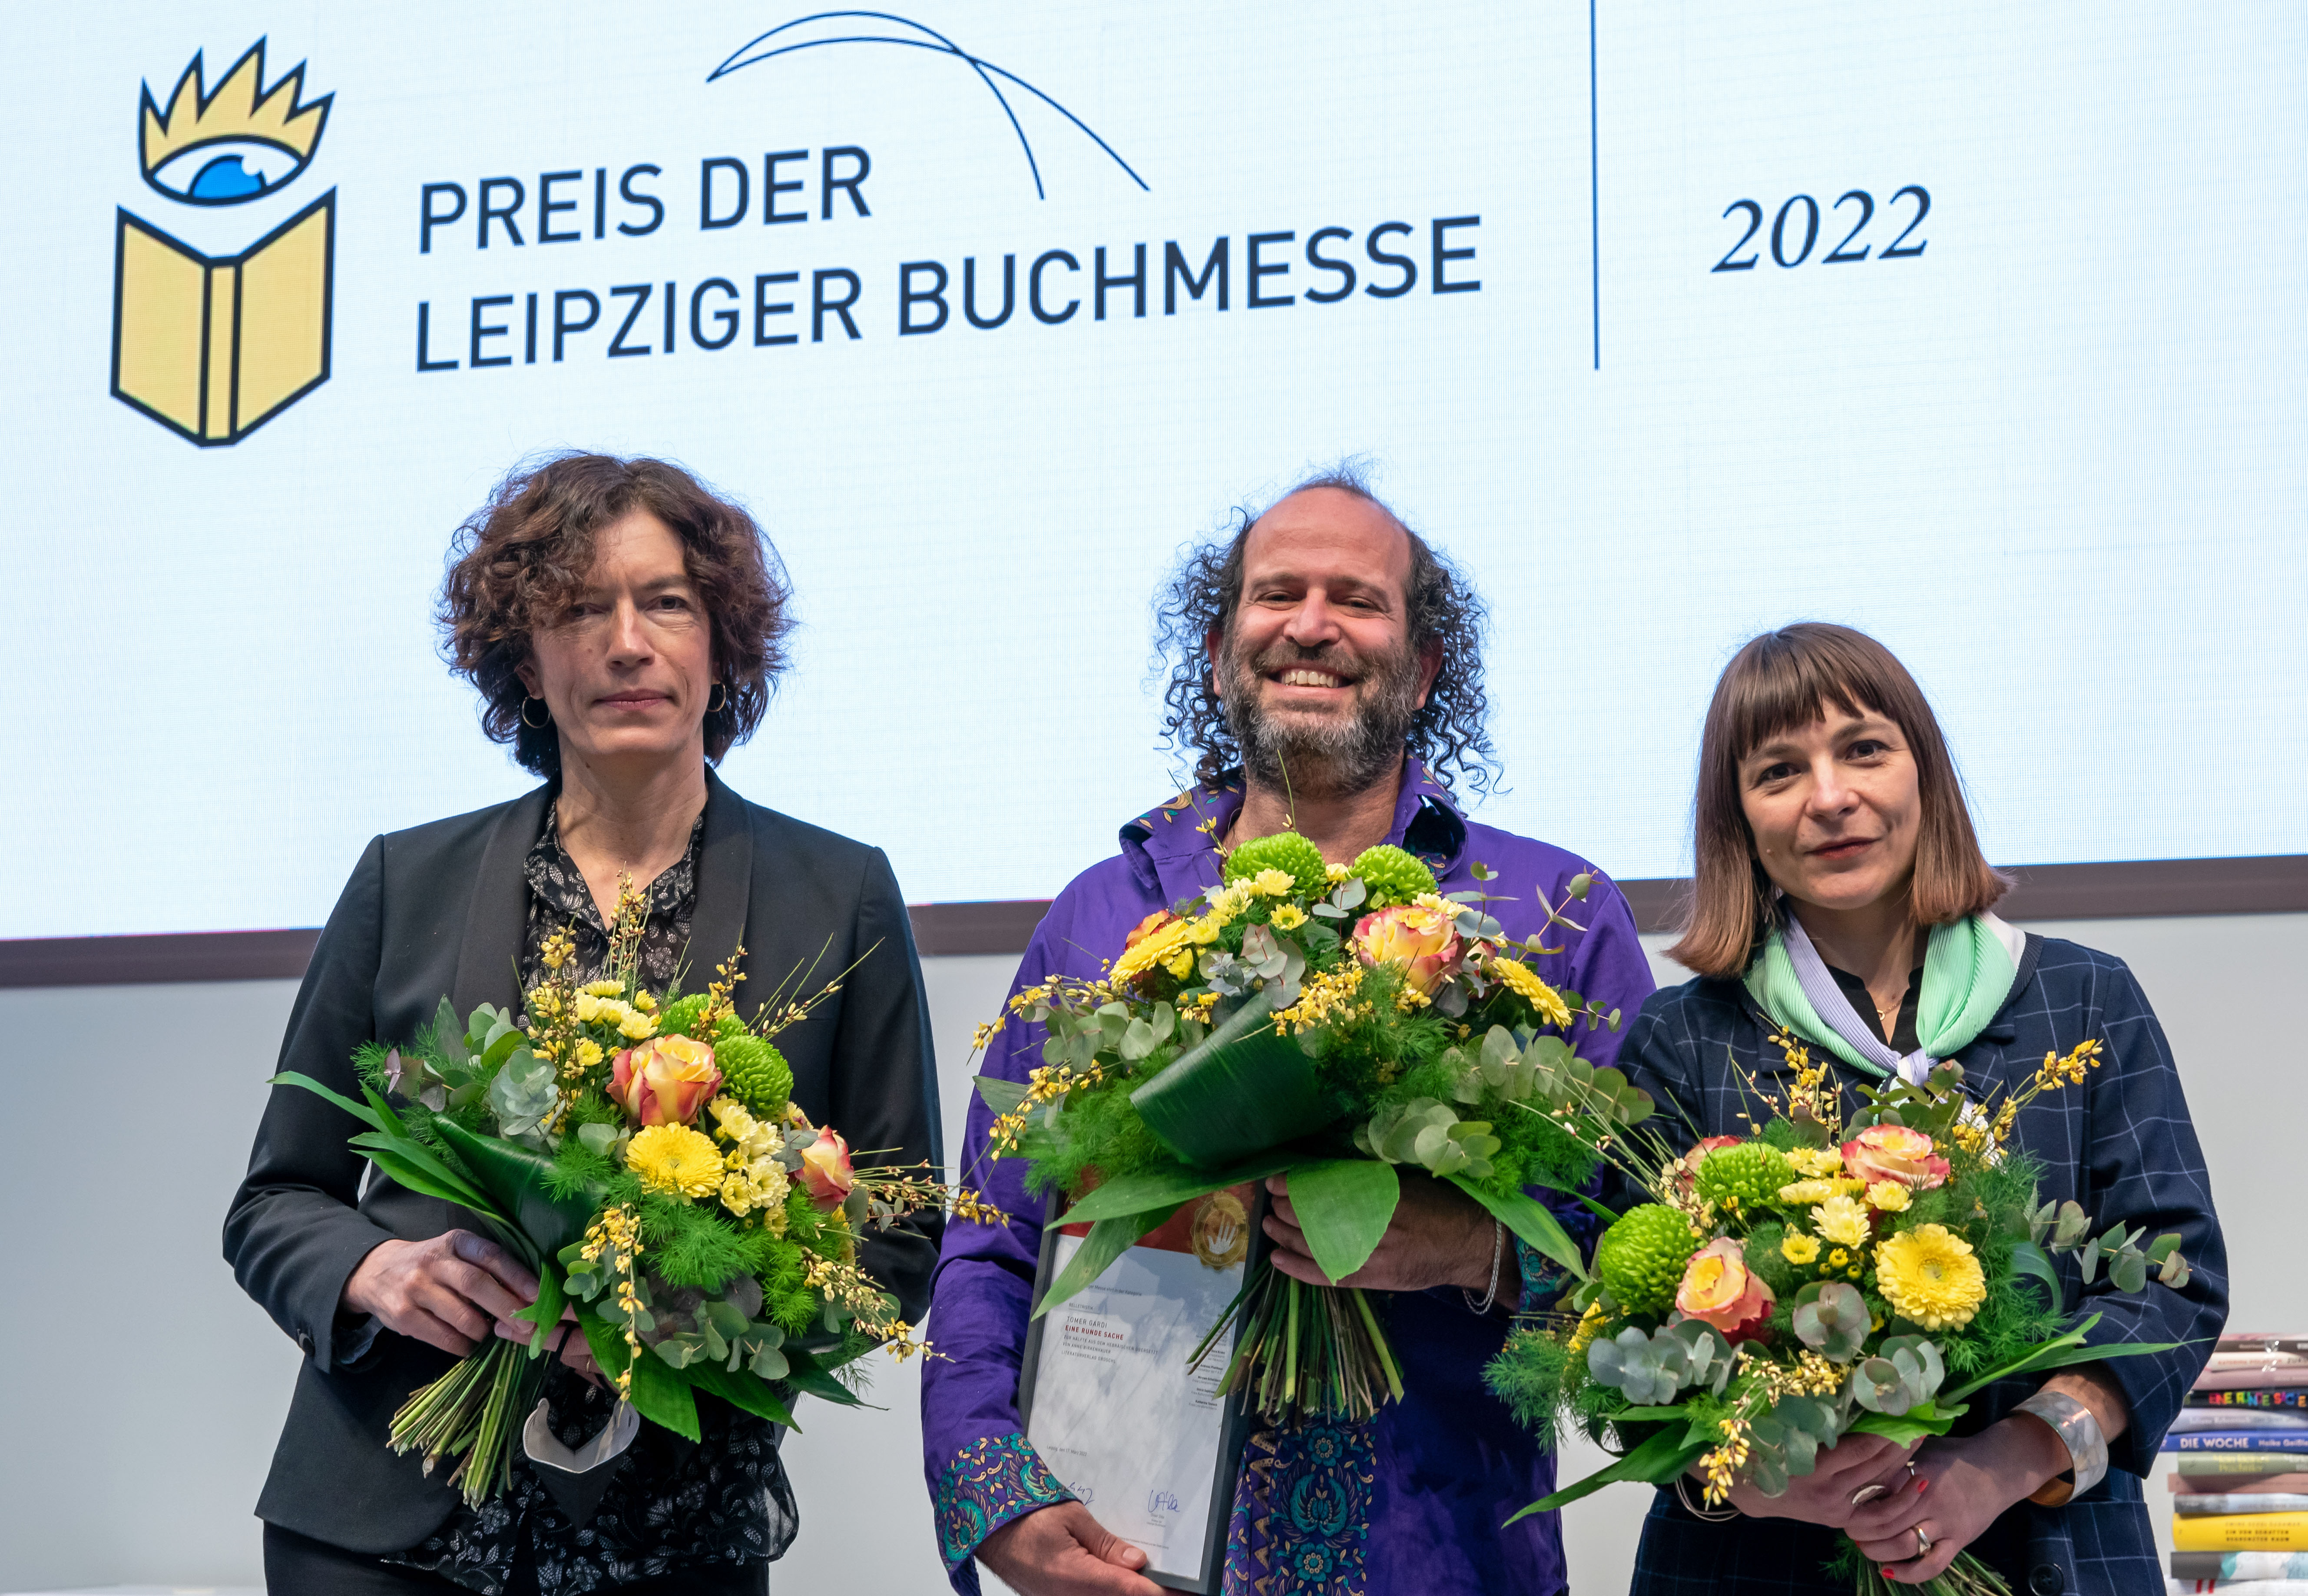   Wortkunst in der Glashalle | Anne Weber, Uljana Wolf und Tomer Gardi erhalten Buchmesse-Preise  